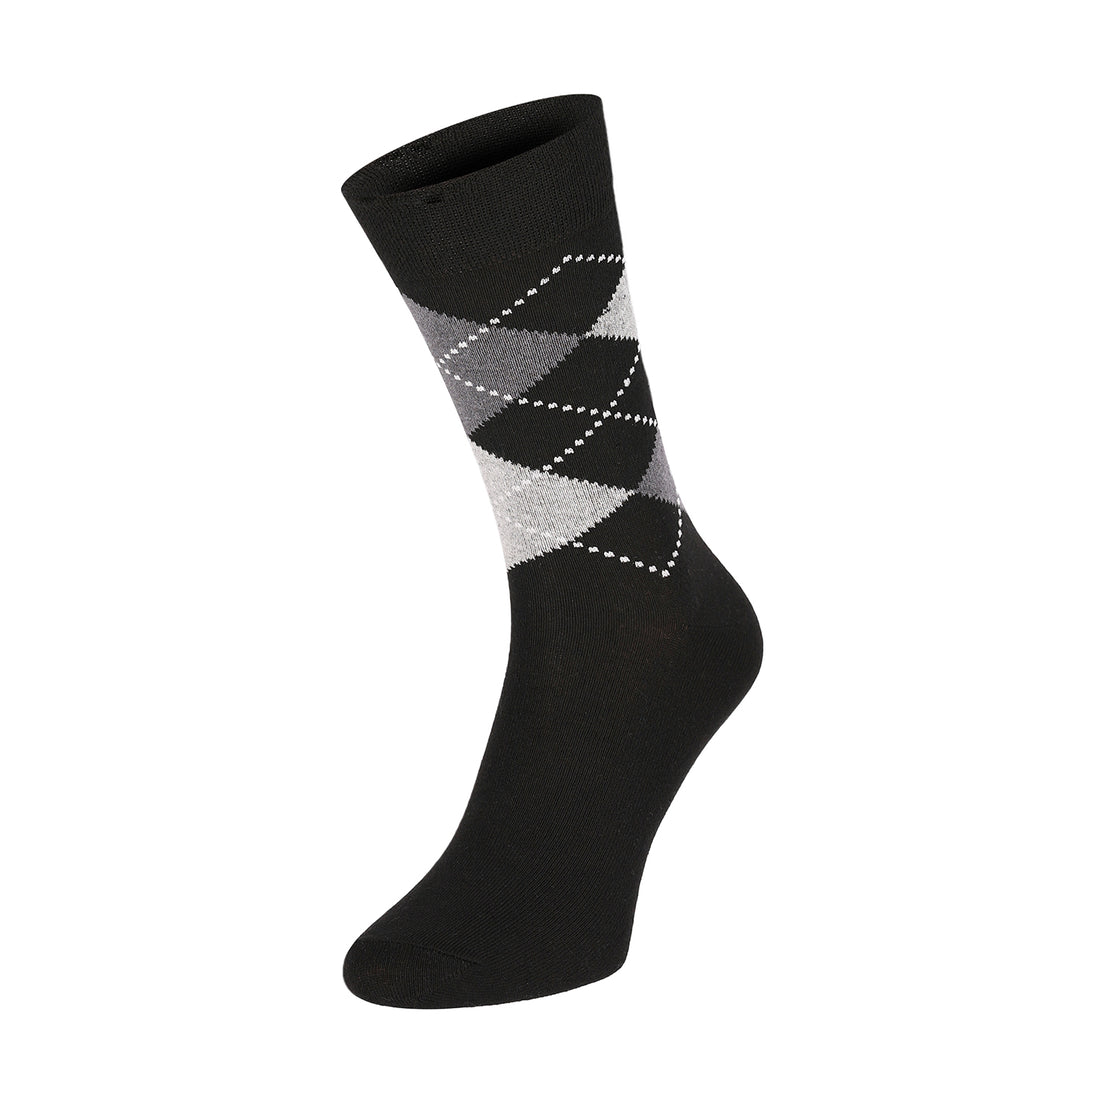 ChiliLifestyle Socken Karo Design, 5 Paar, Damen, Herren, Baumwolle